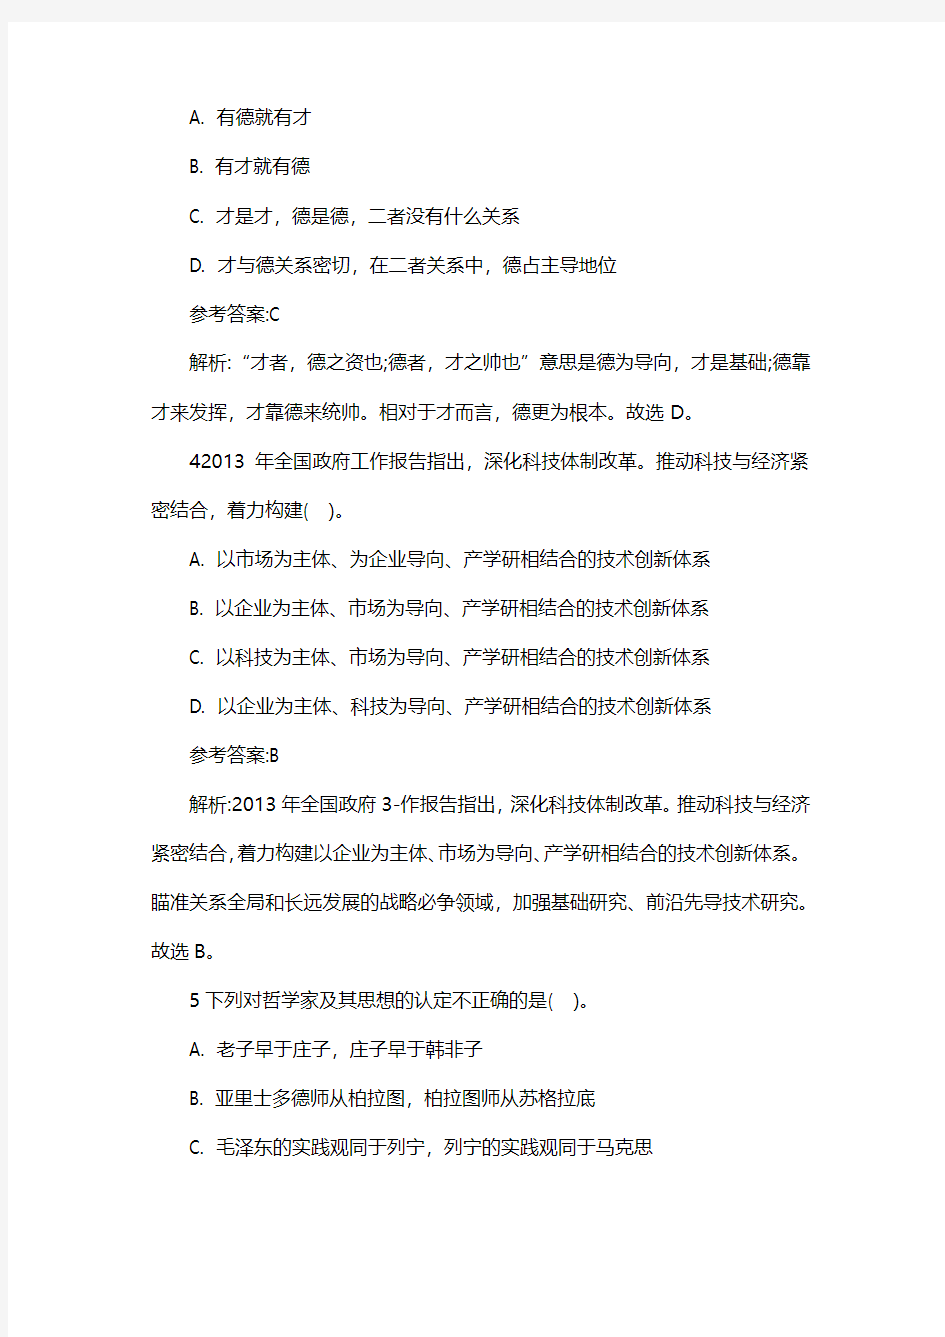 2014重庆市荣昌县事业单位考试复习资料